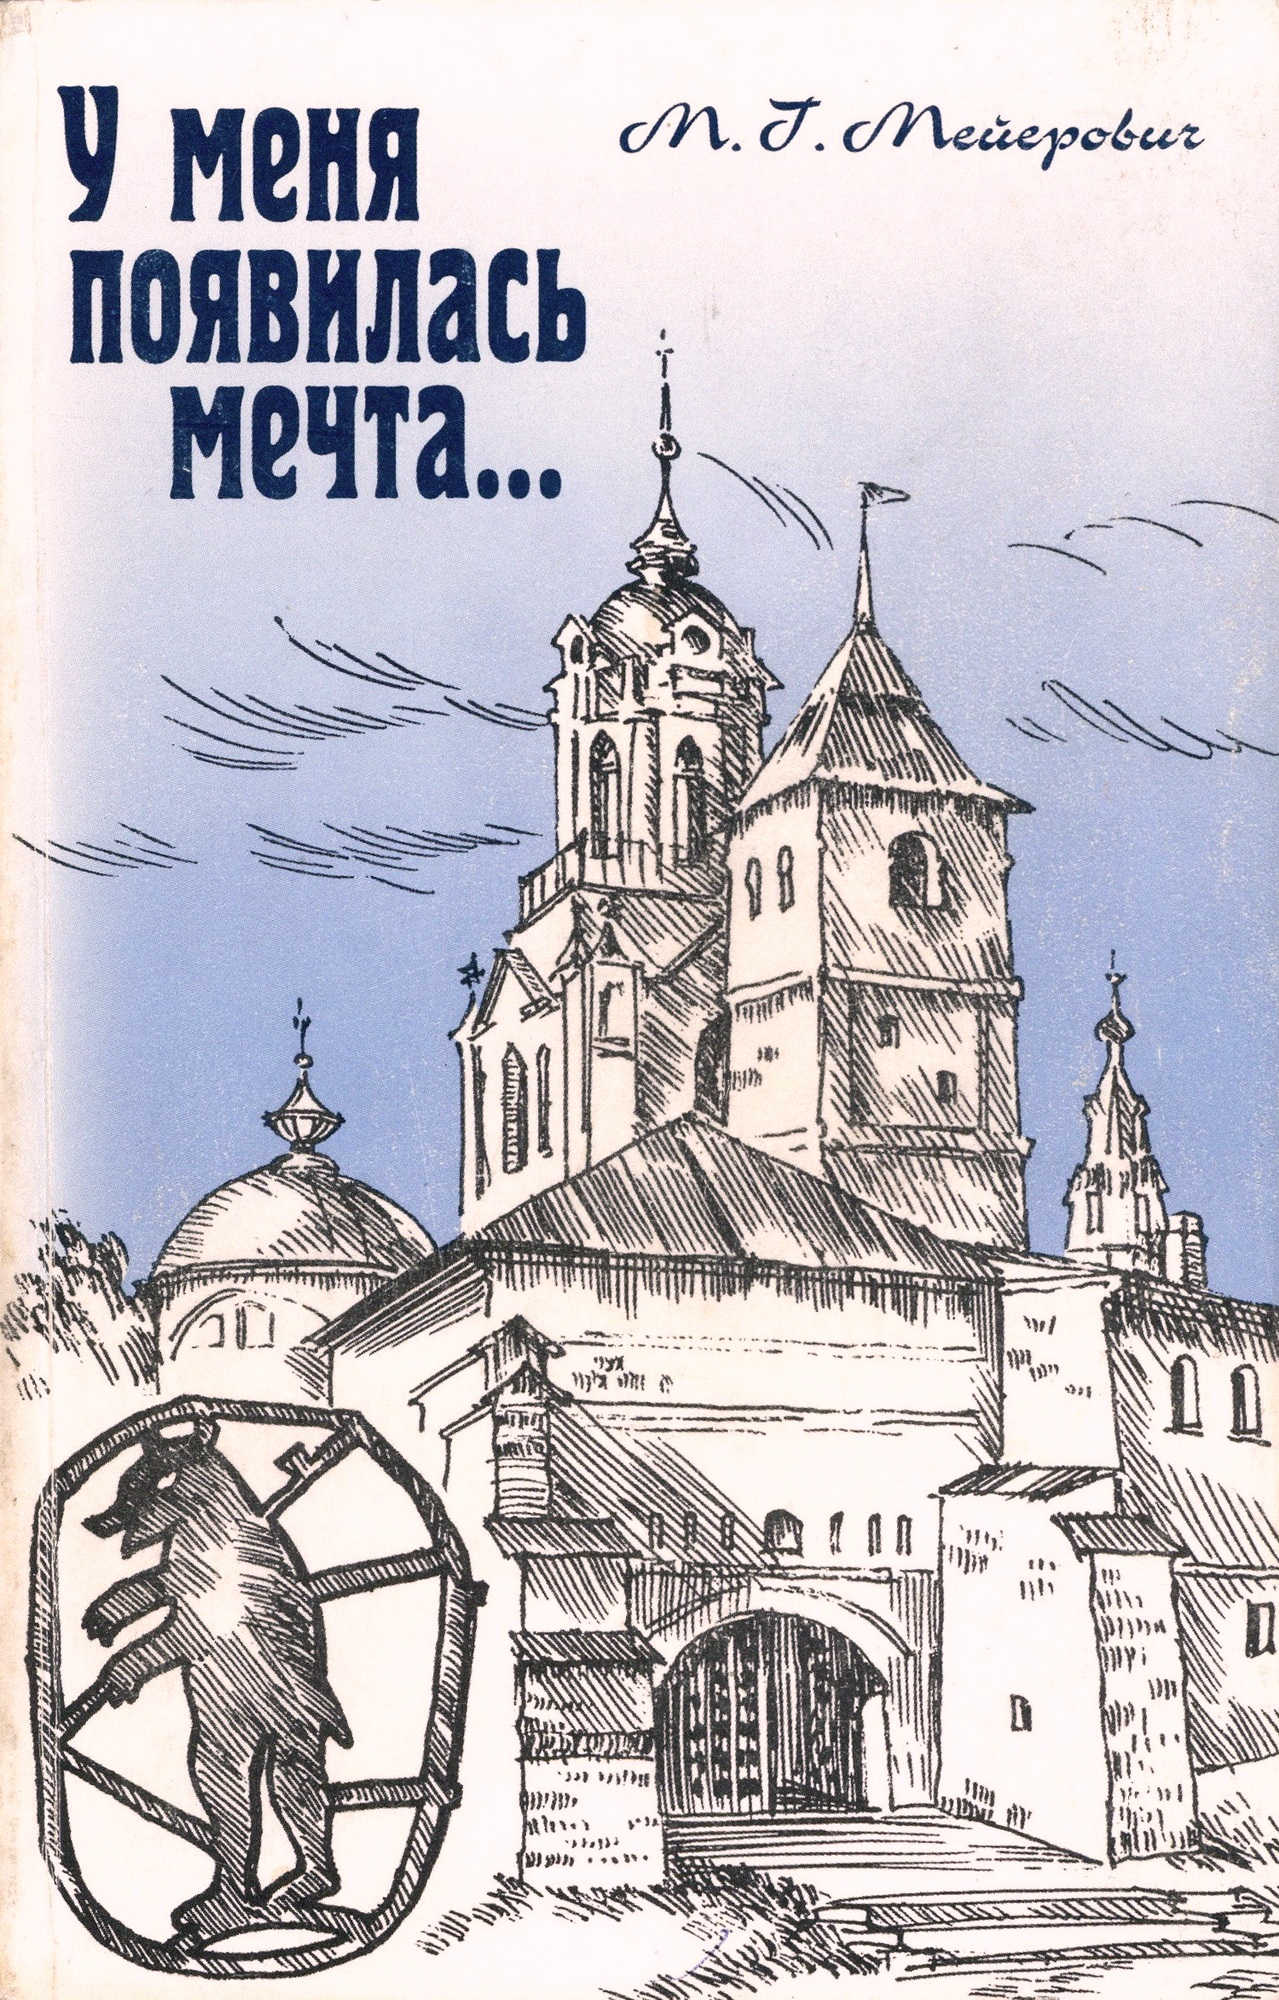 Обложка книги: Мейерович М. Г. У меня появилась мечта… Ярославль: Издательство Александра Рутмана, 2004.